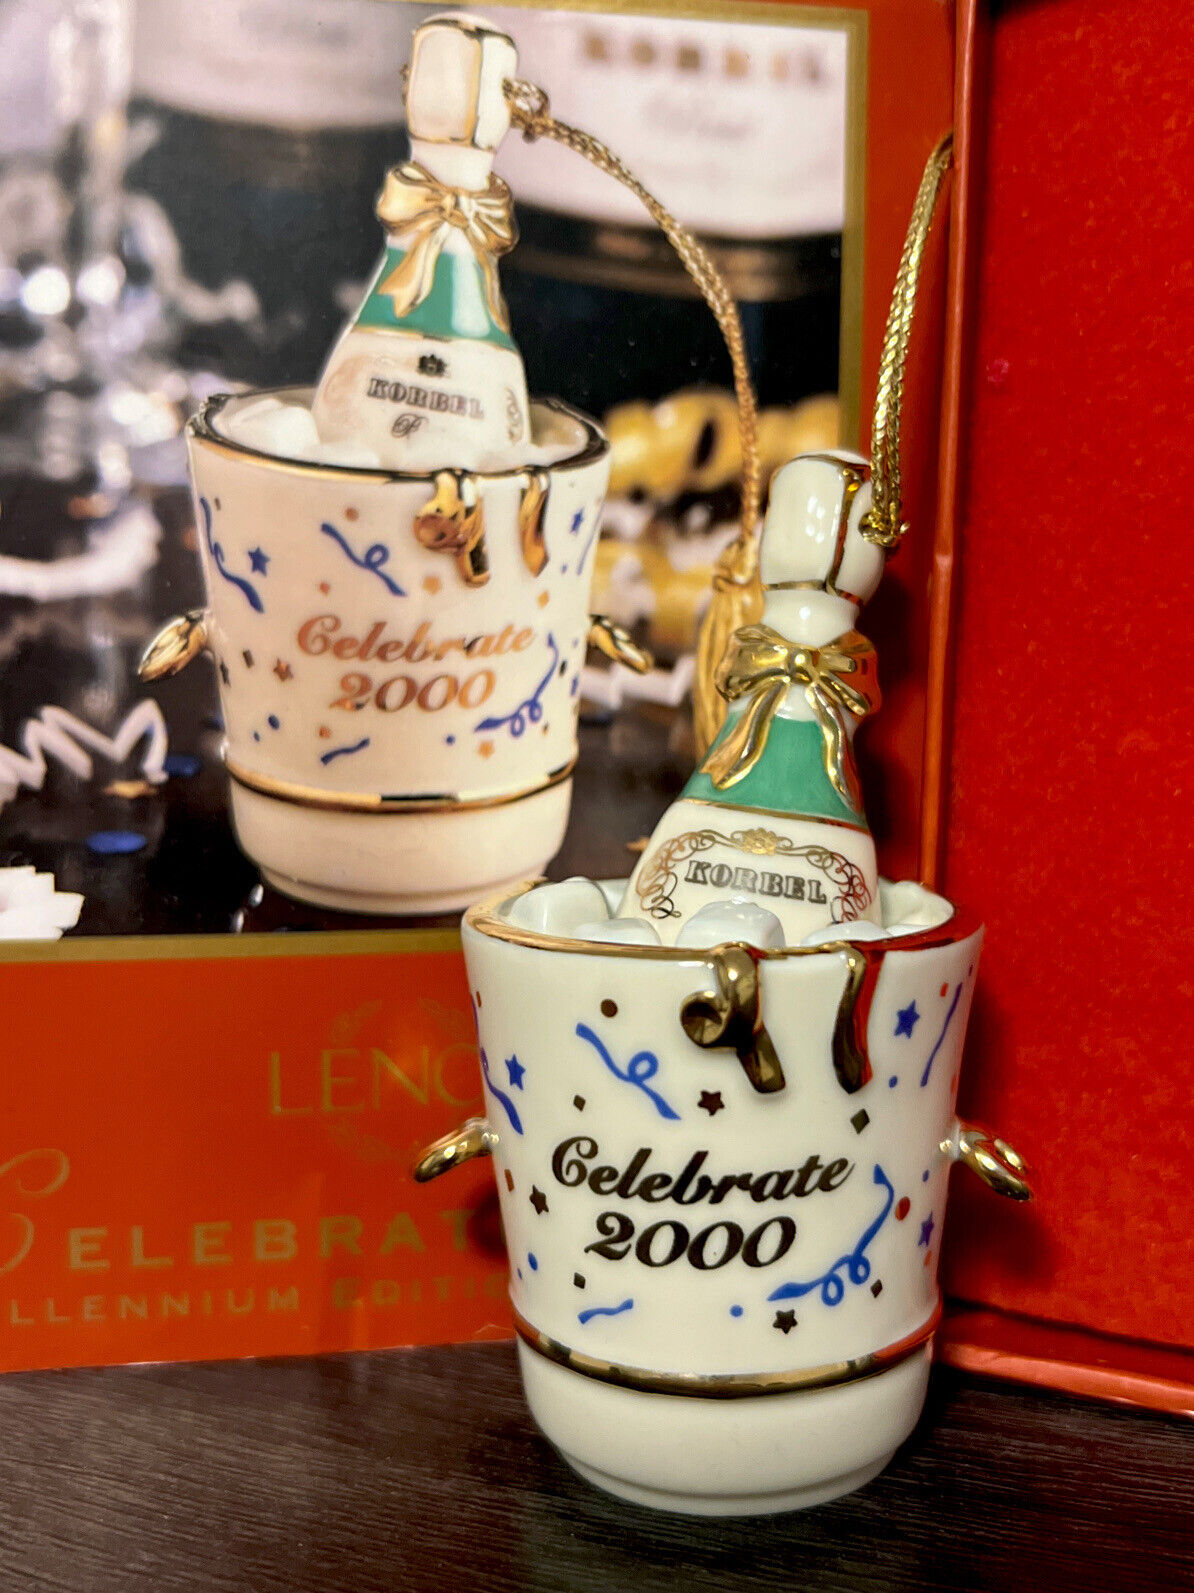 Lenox Celebrate 2000 Millennium Edition Ornament Champagne in Bucket New In Box